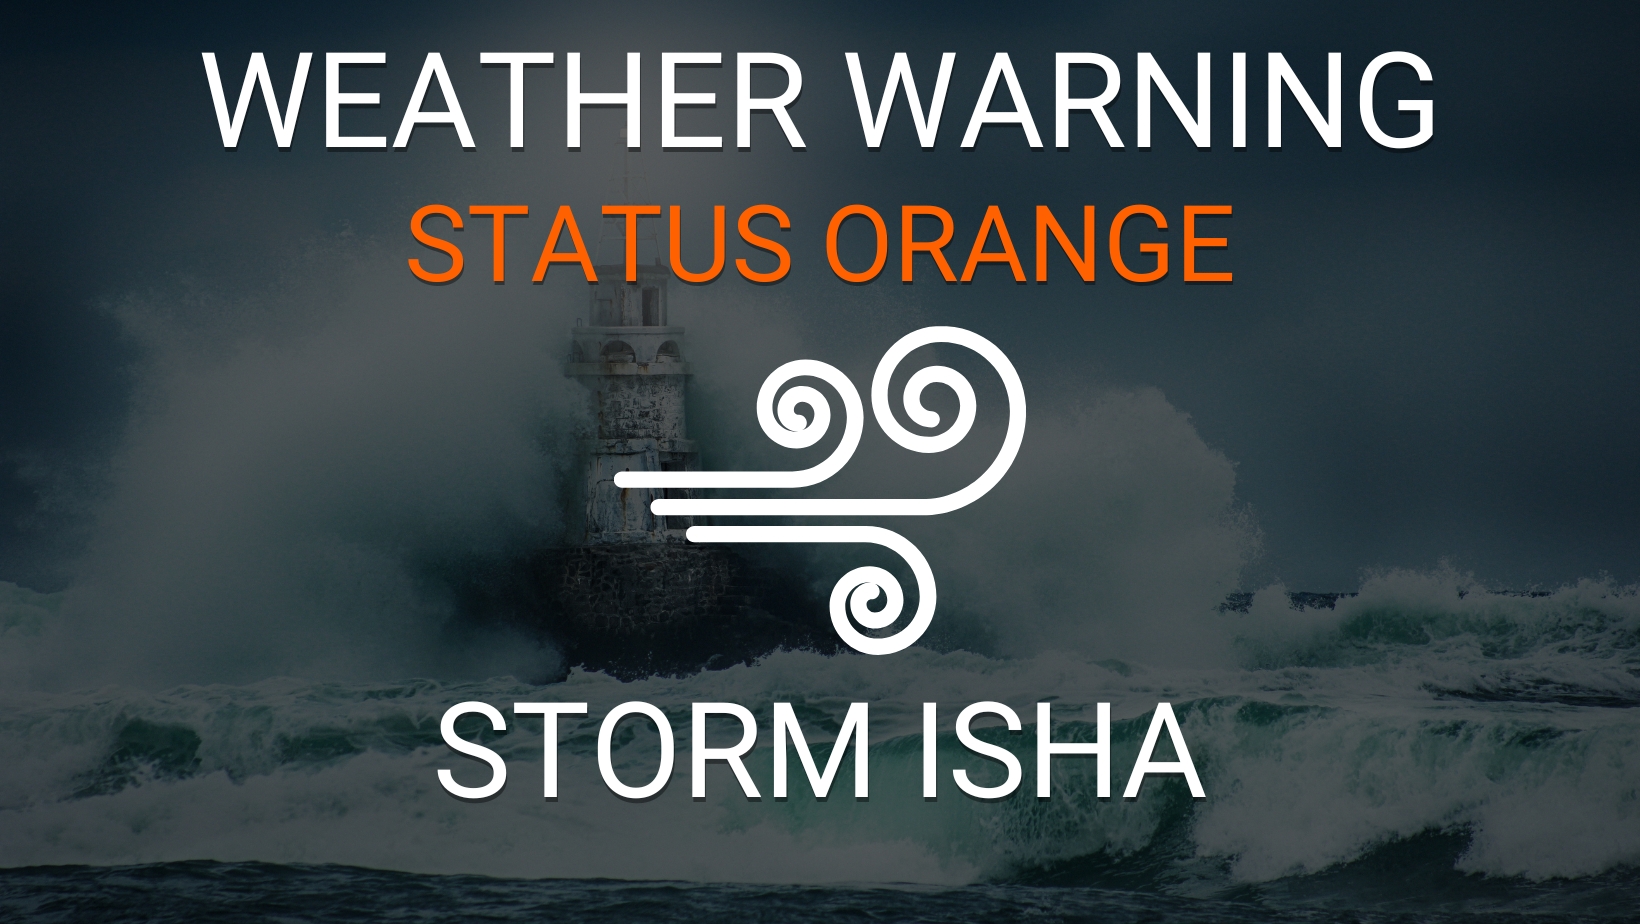 Status Orange Warning Storm Isha Weather Warning Upgraded Cork